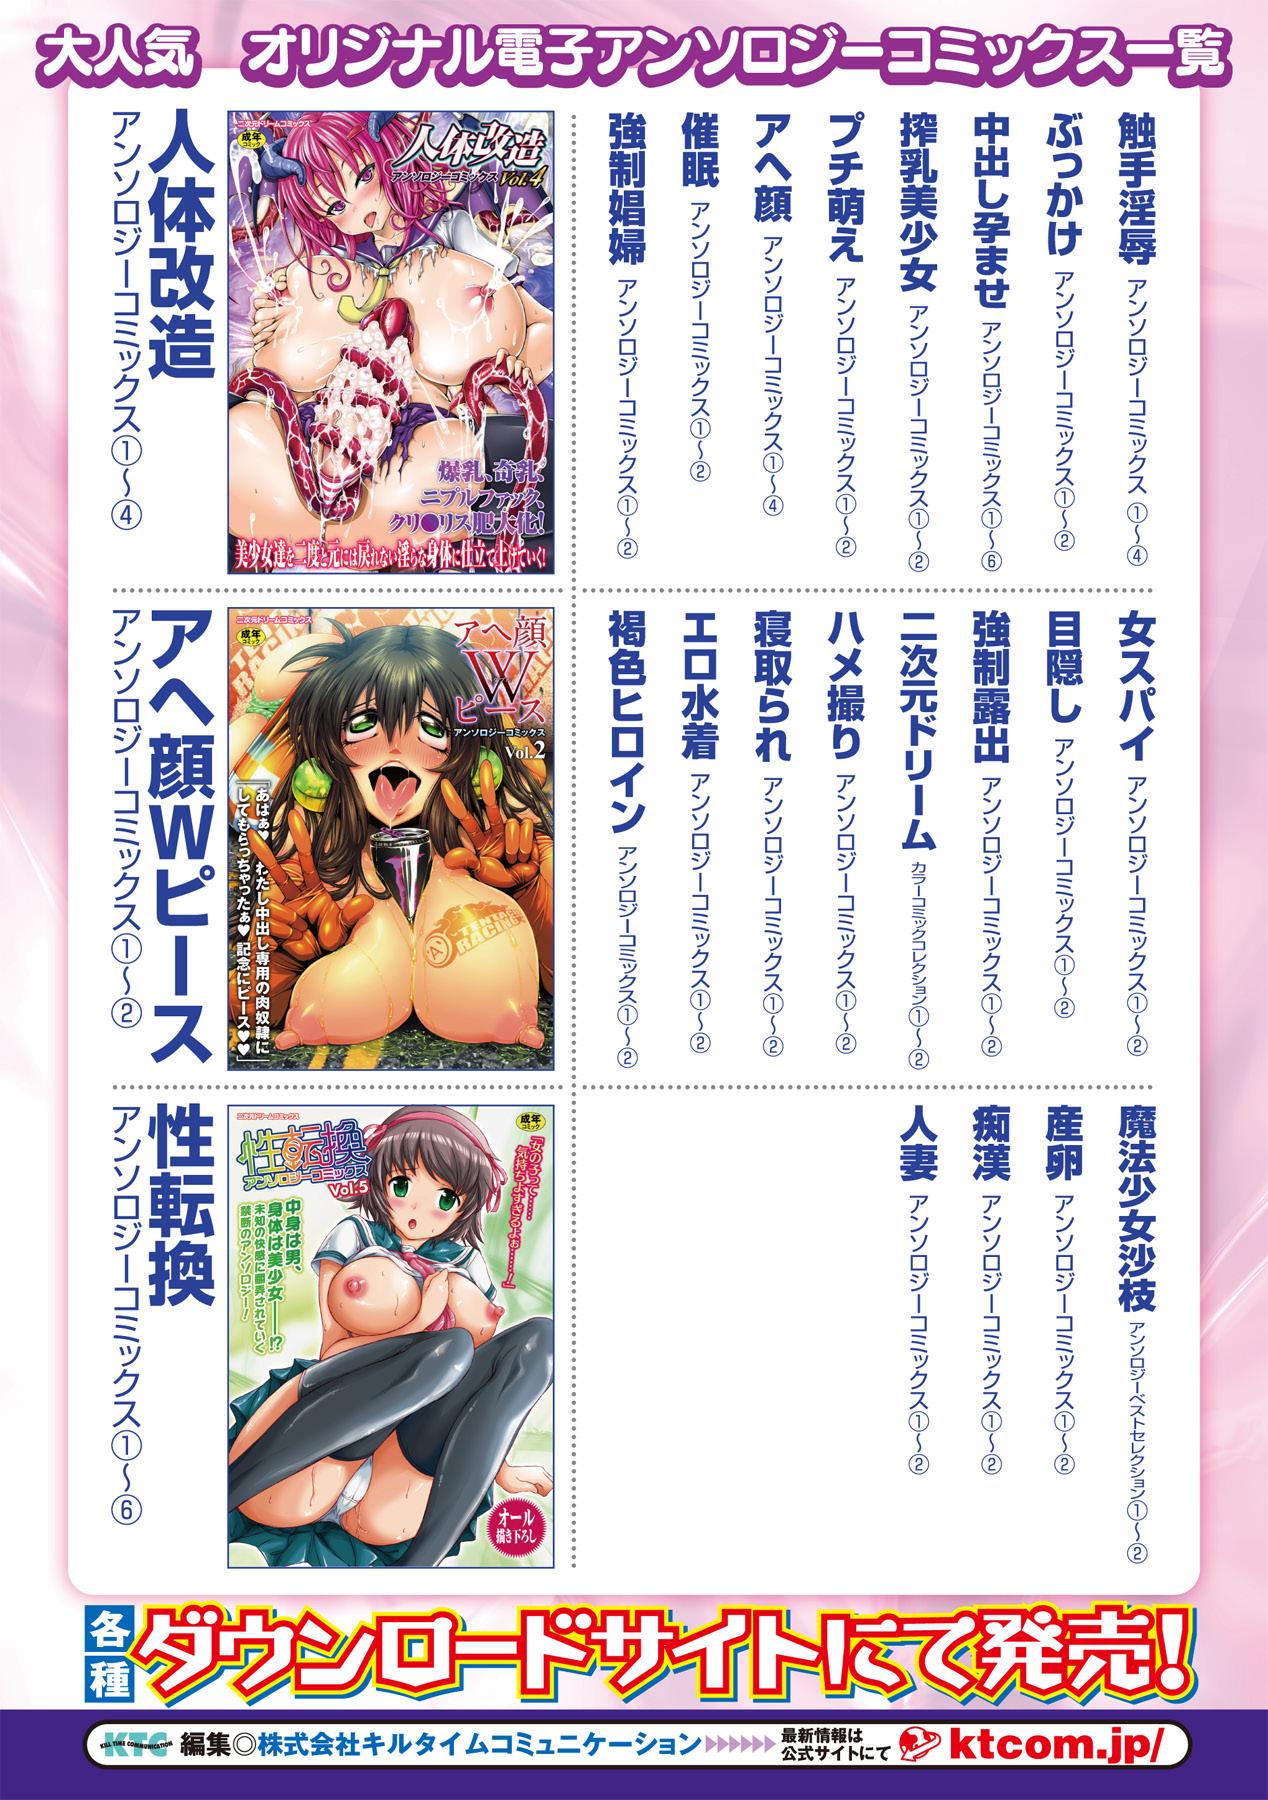 Bessatsu Comic Unreal Monster Musume Paradise Digital ver. Vol.1 80